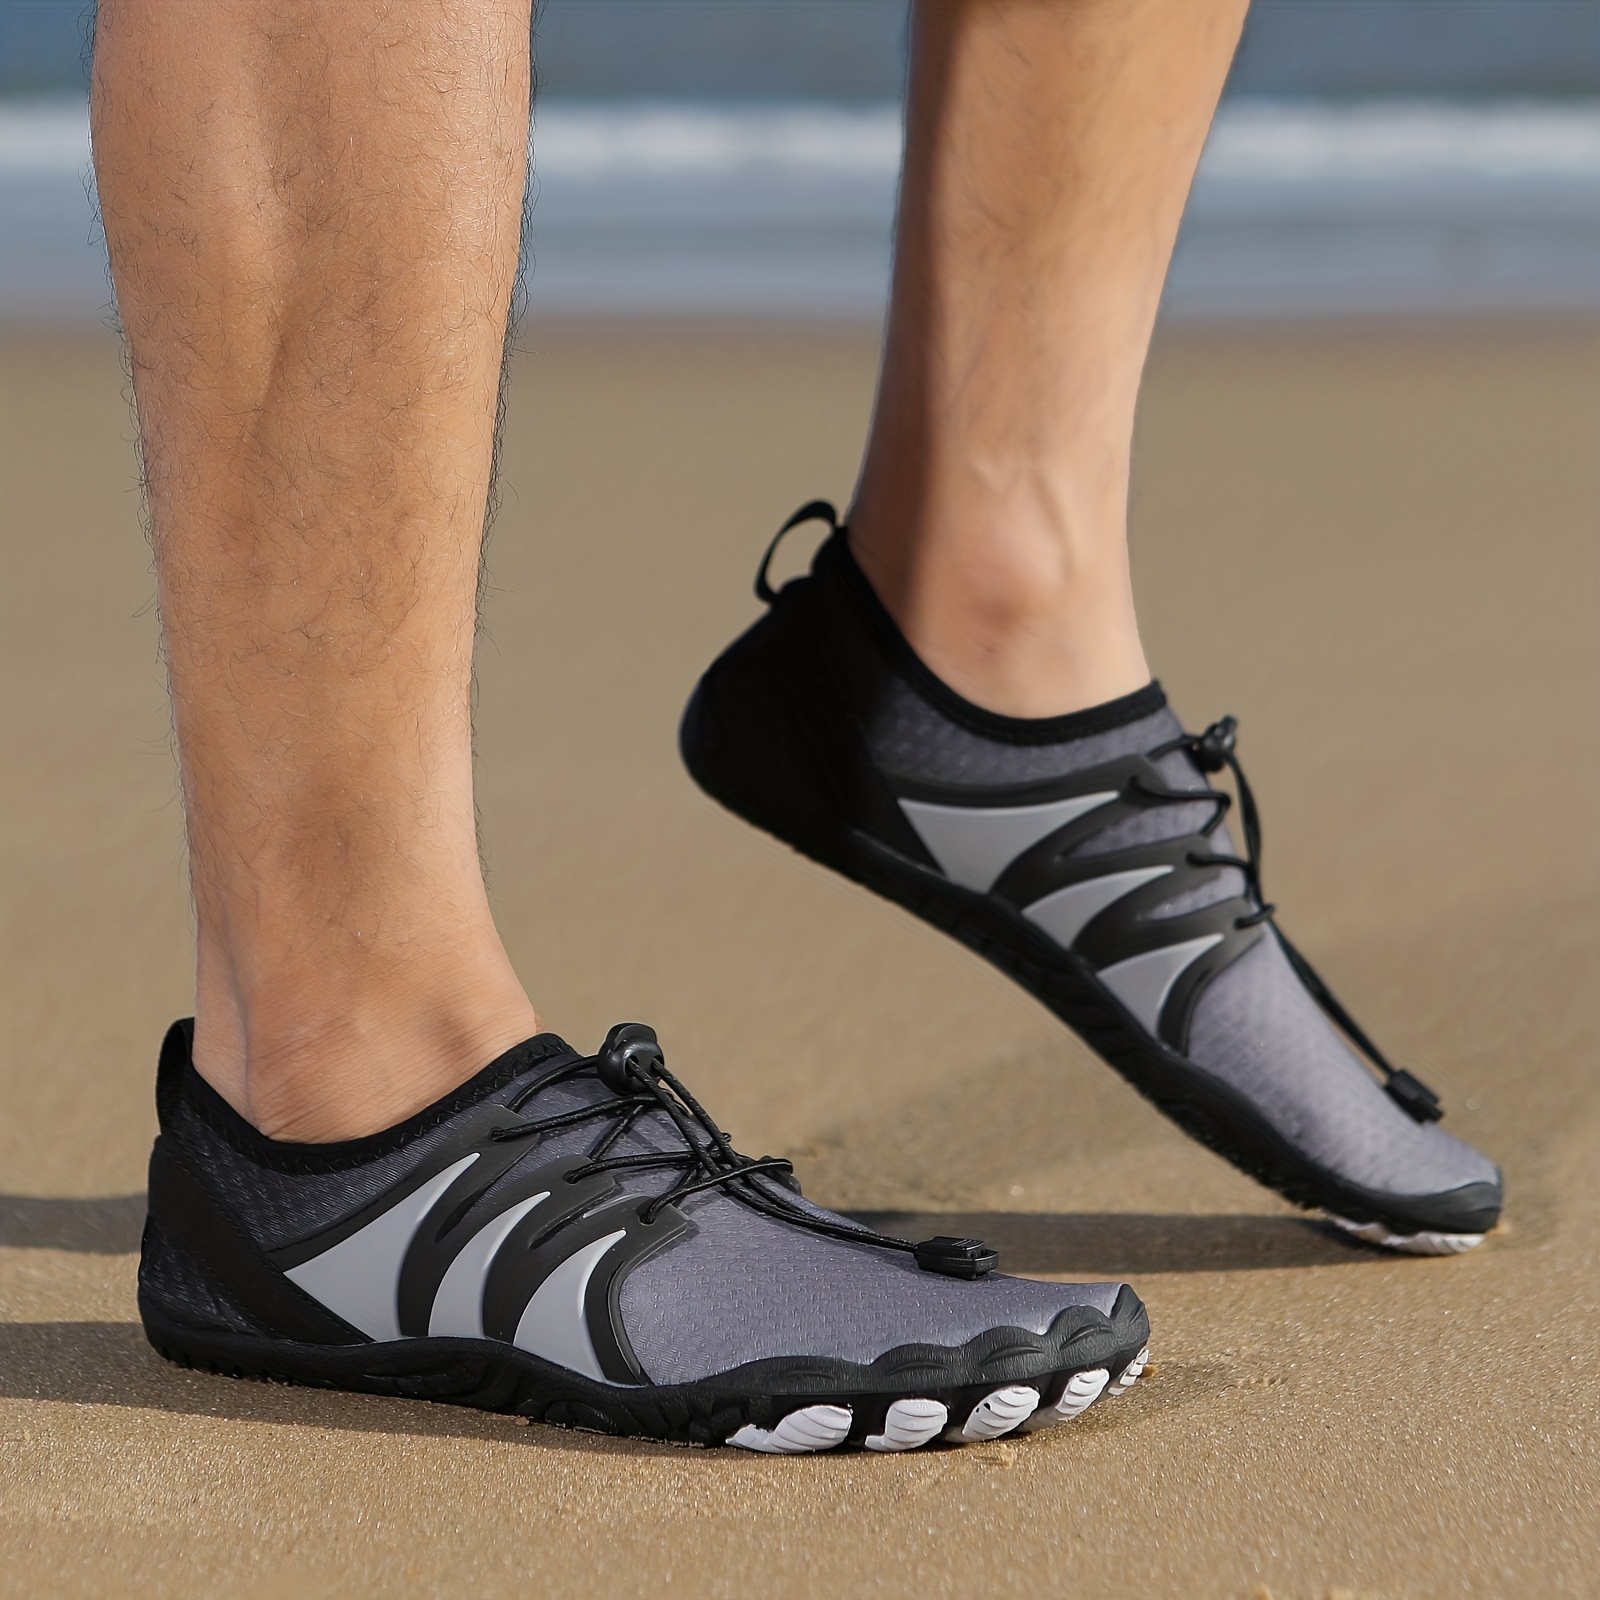 unisex antideslizante secado rápido descalzo natación aqua zapatos